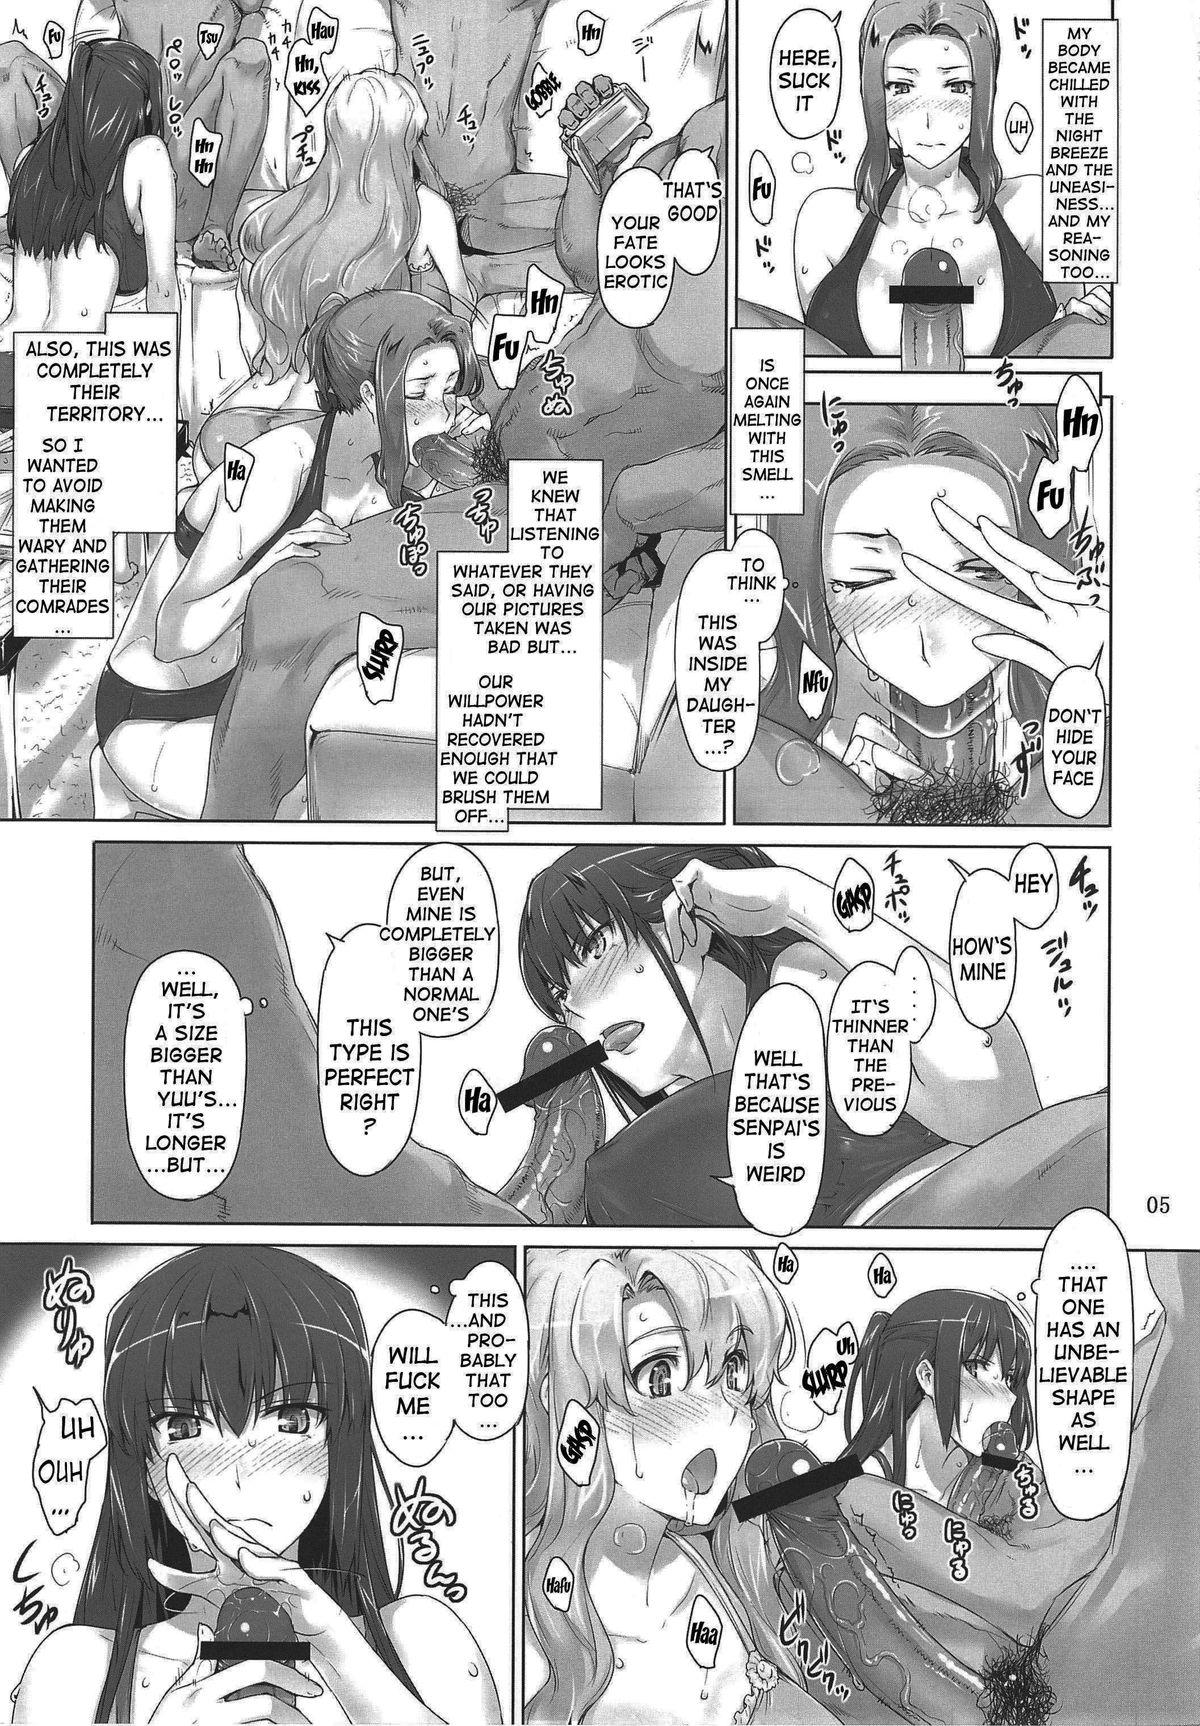 Puta Mtsp - Tachibana-san's Circumstabces WIth a Man 3 Cornudo - Page 4